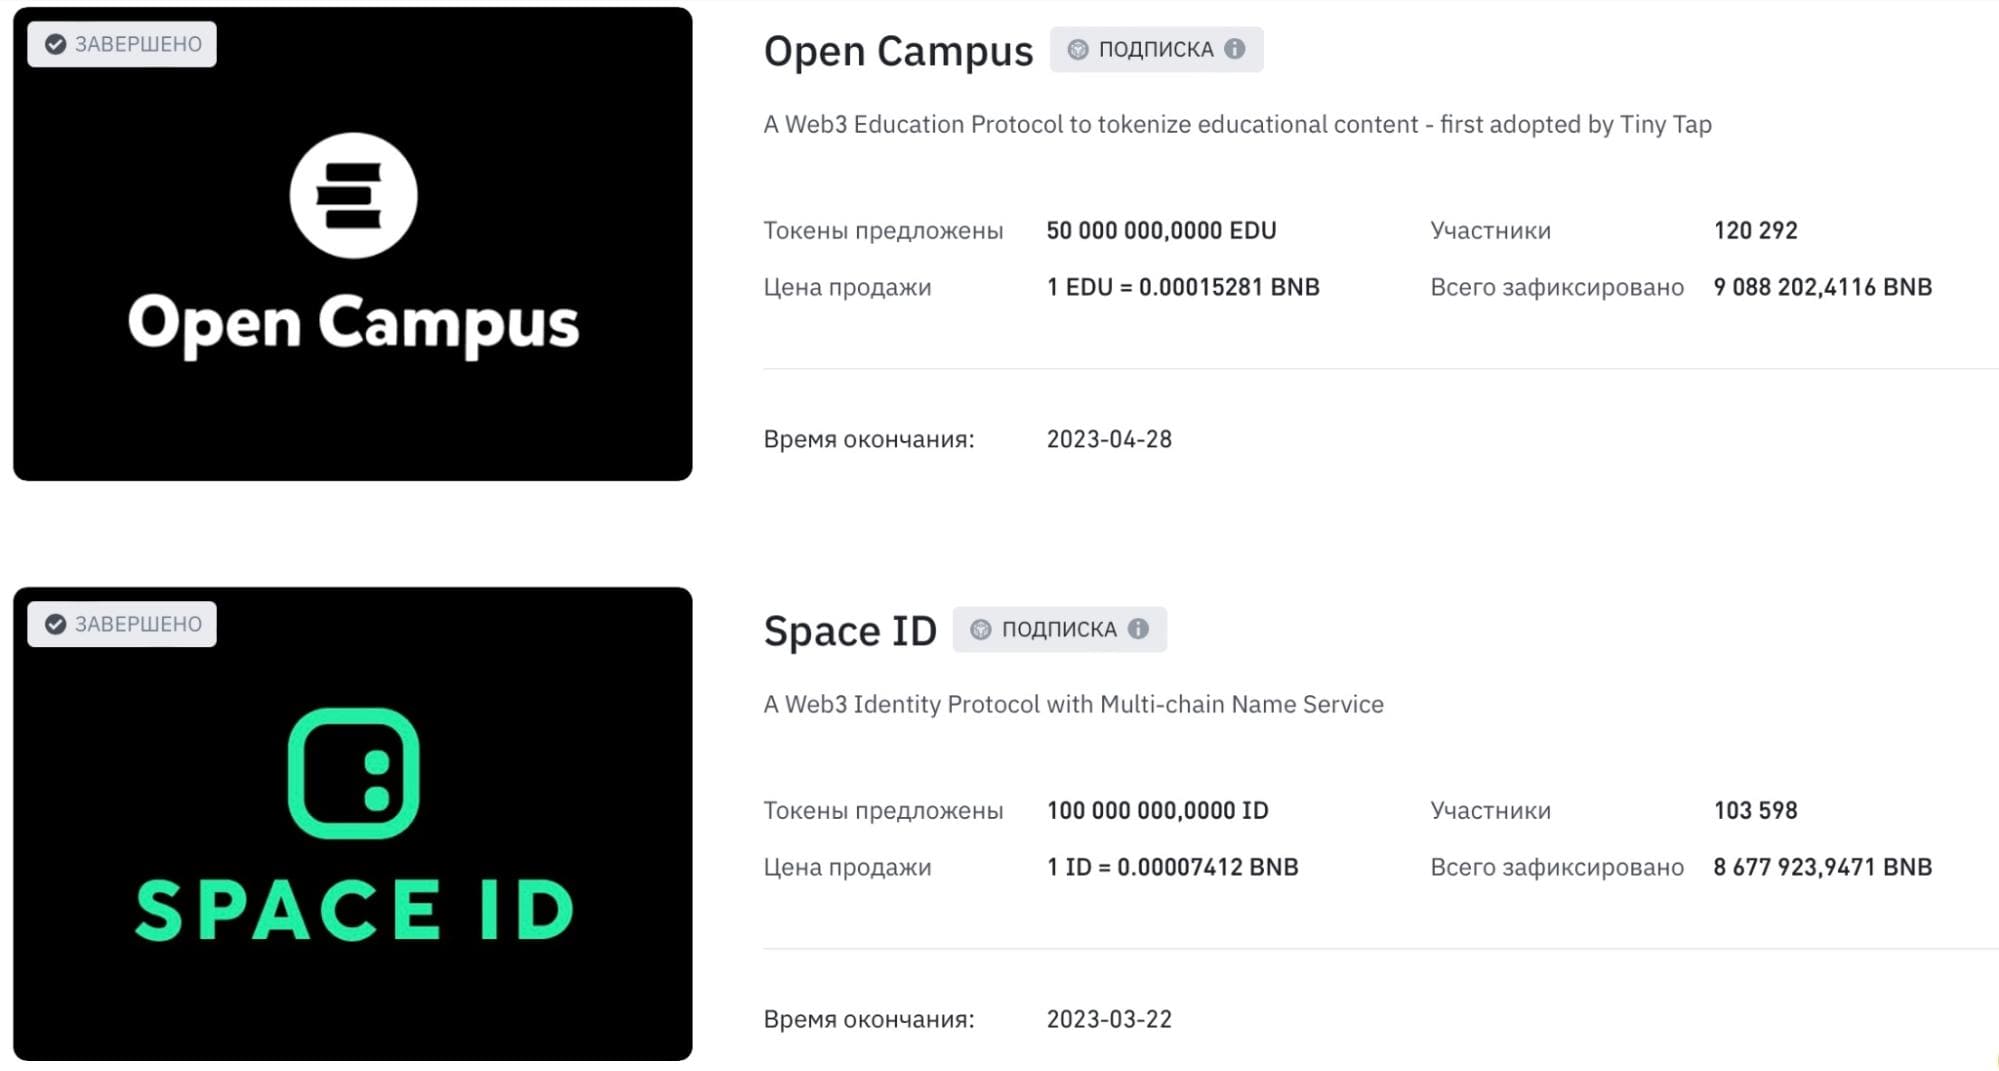 результаты двух лаунчпадов: Open Campus (EDU) и Space ID (ID)